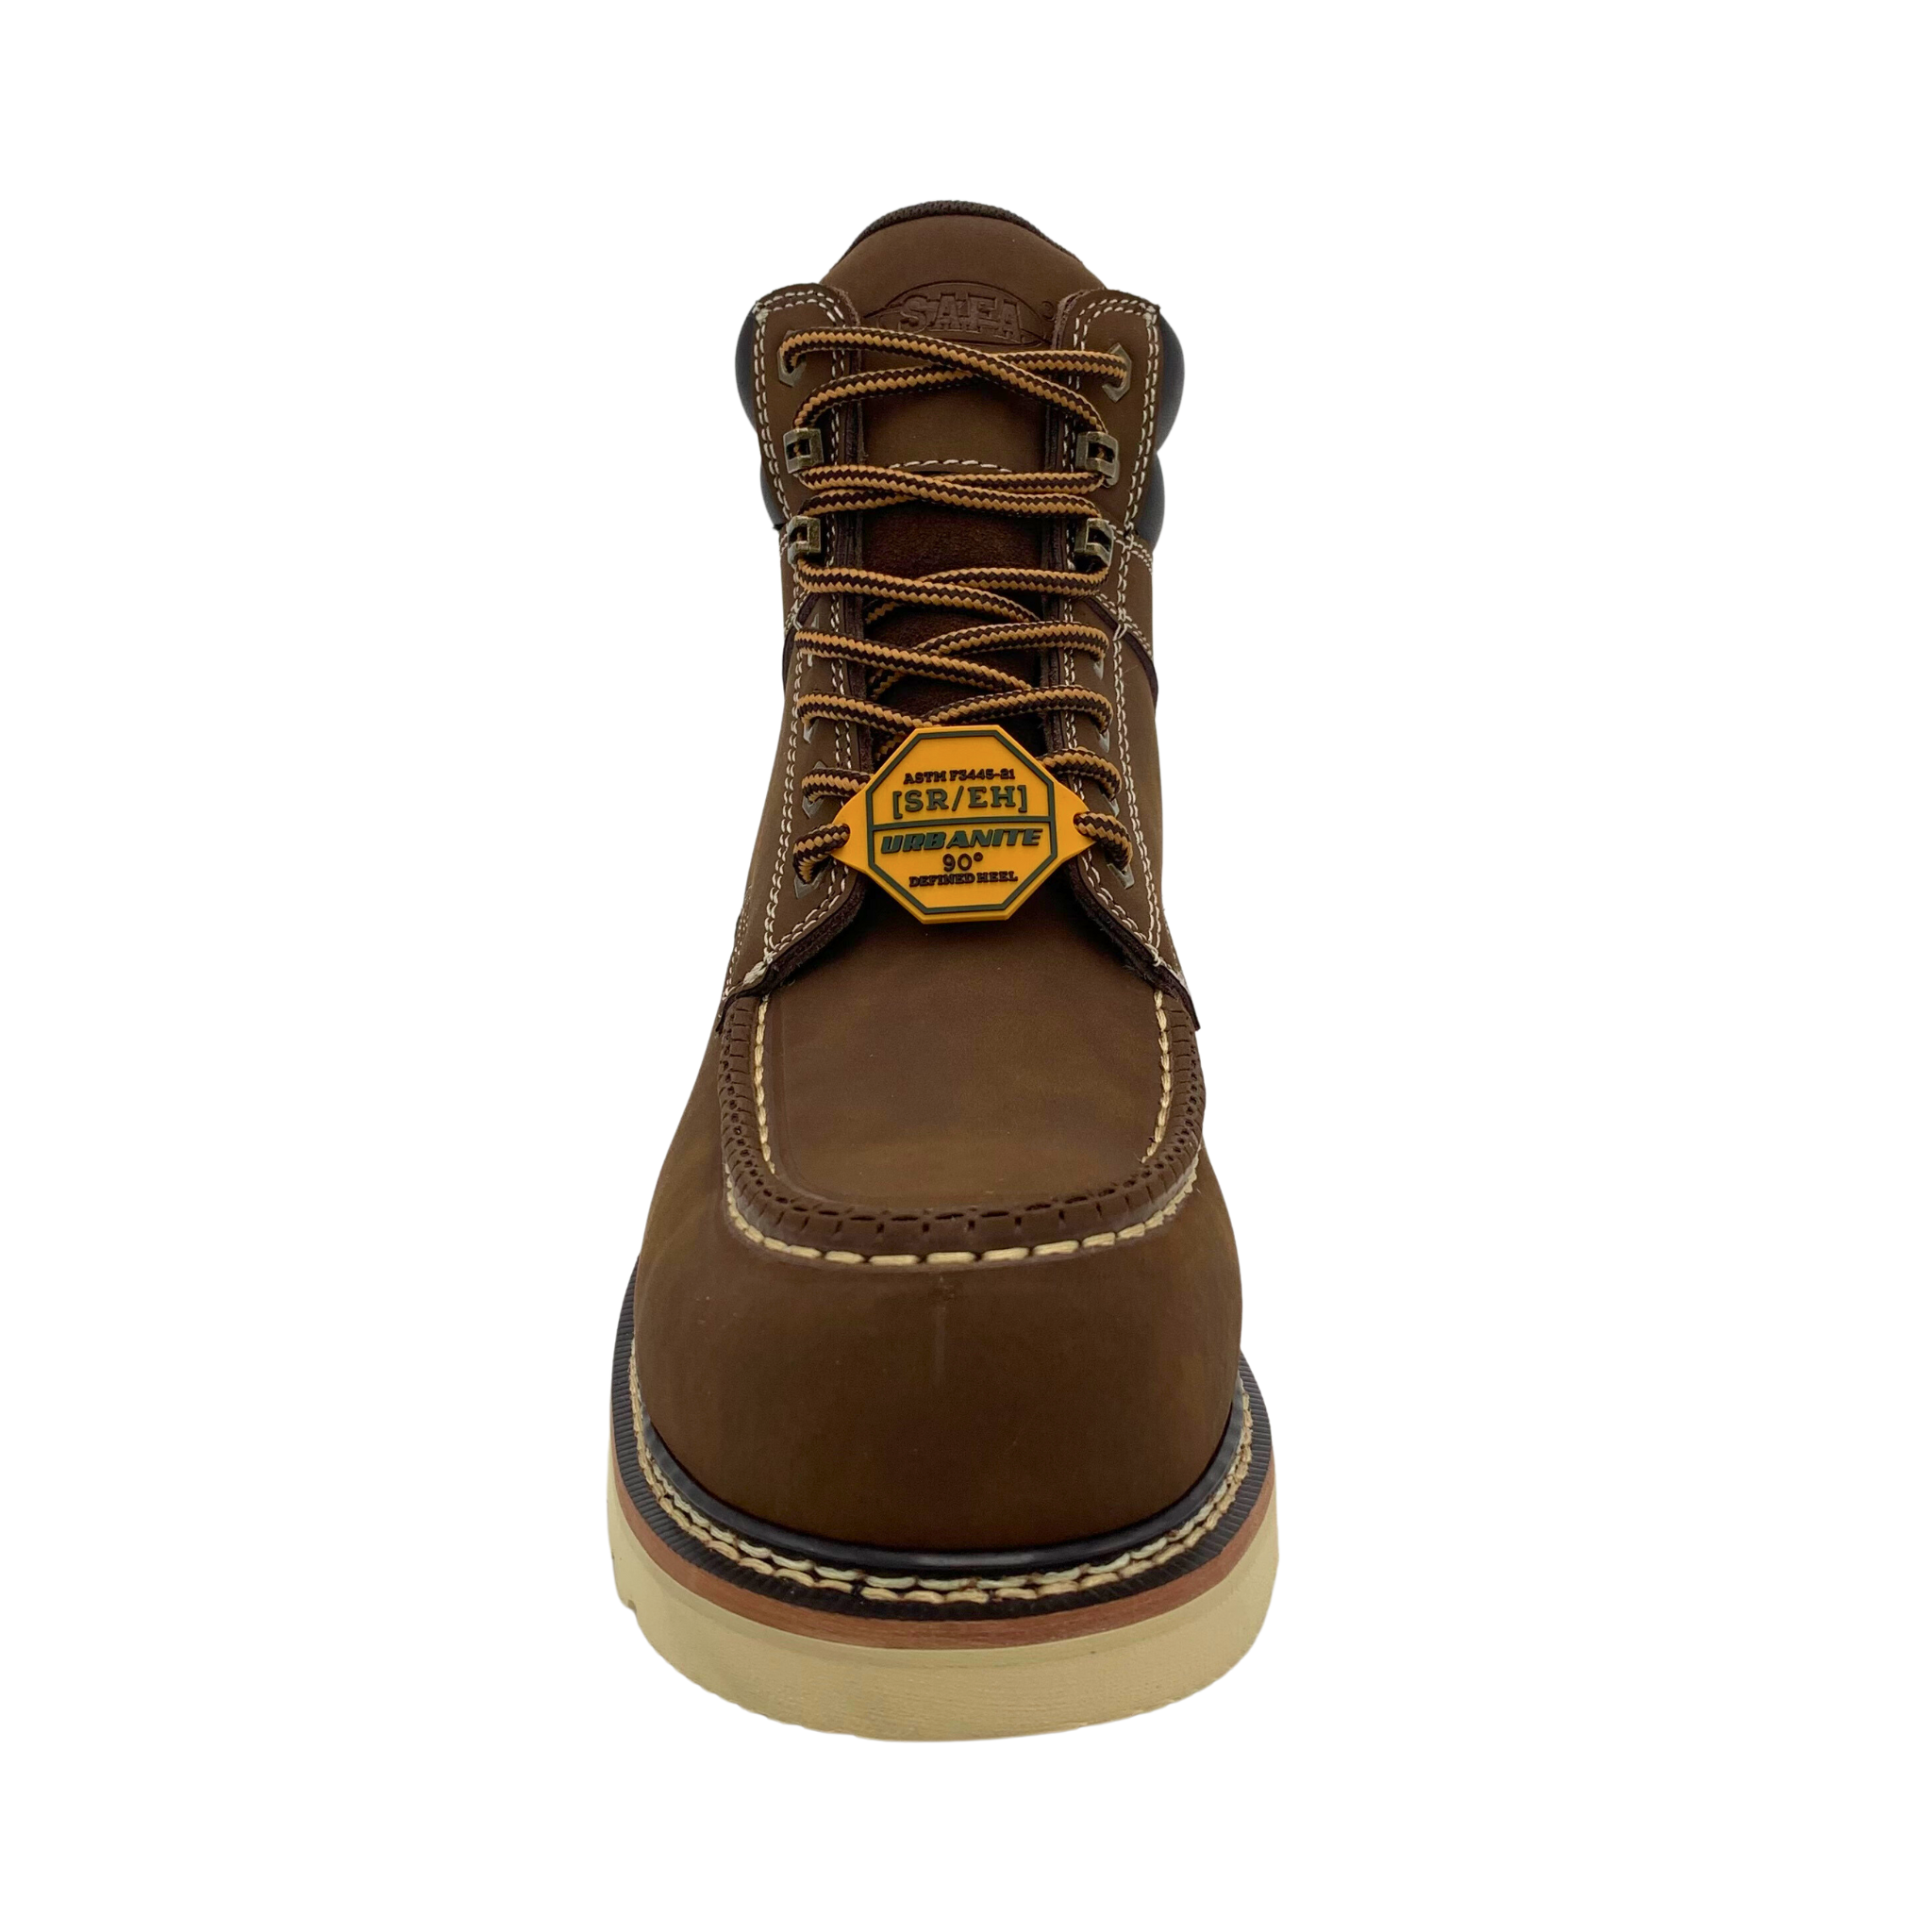 SAFA Men's 6" Brown Leather Defined Heel Cap Toe Work Boot